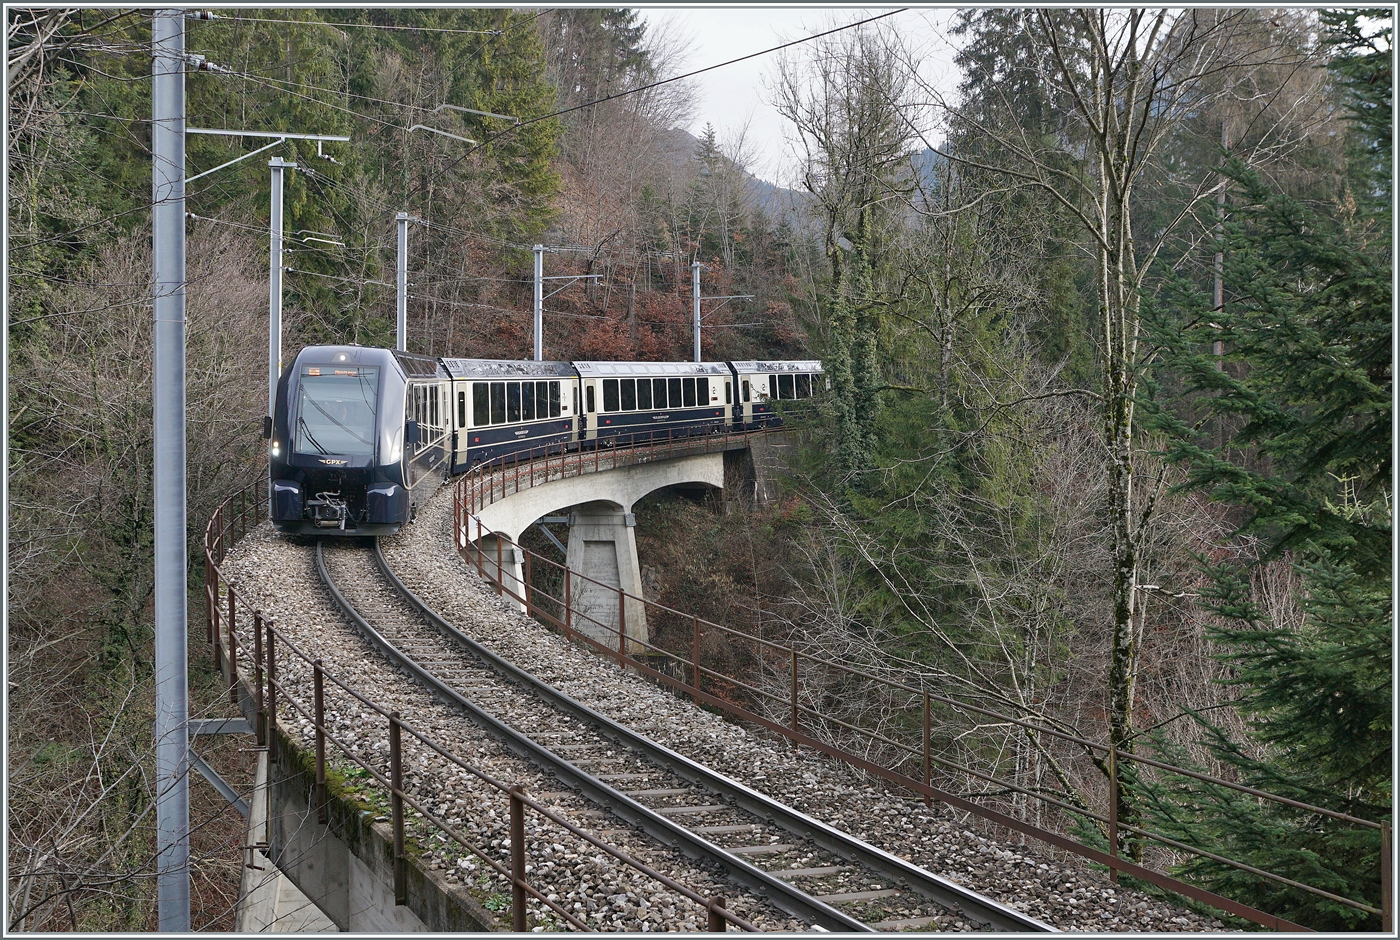 Der MOB GoldenPass Express GPX 4065 ist auf dem Weg von Interlaken Ost nach Montreux und hat kurz nach Les Avants sein Ziel schon fast erreicht. Der Spurwechselzug fhrt ber die die 93 Meter lange Pont Gardiol, welche ber den Bois des Chenaux berbrckt.

4. Januar 2023